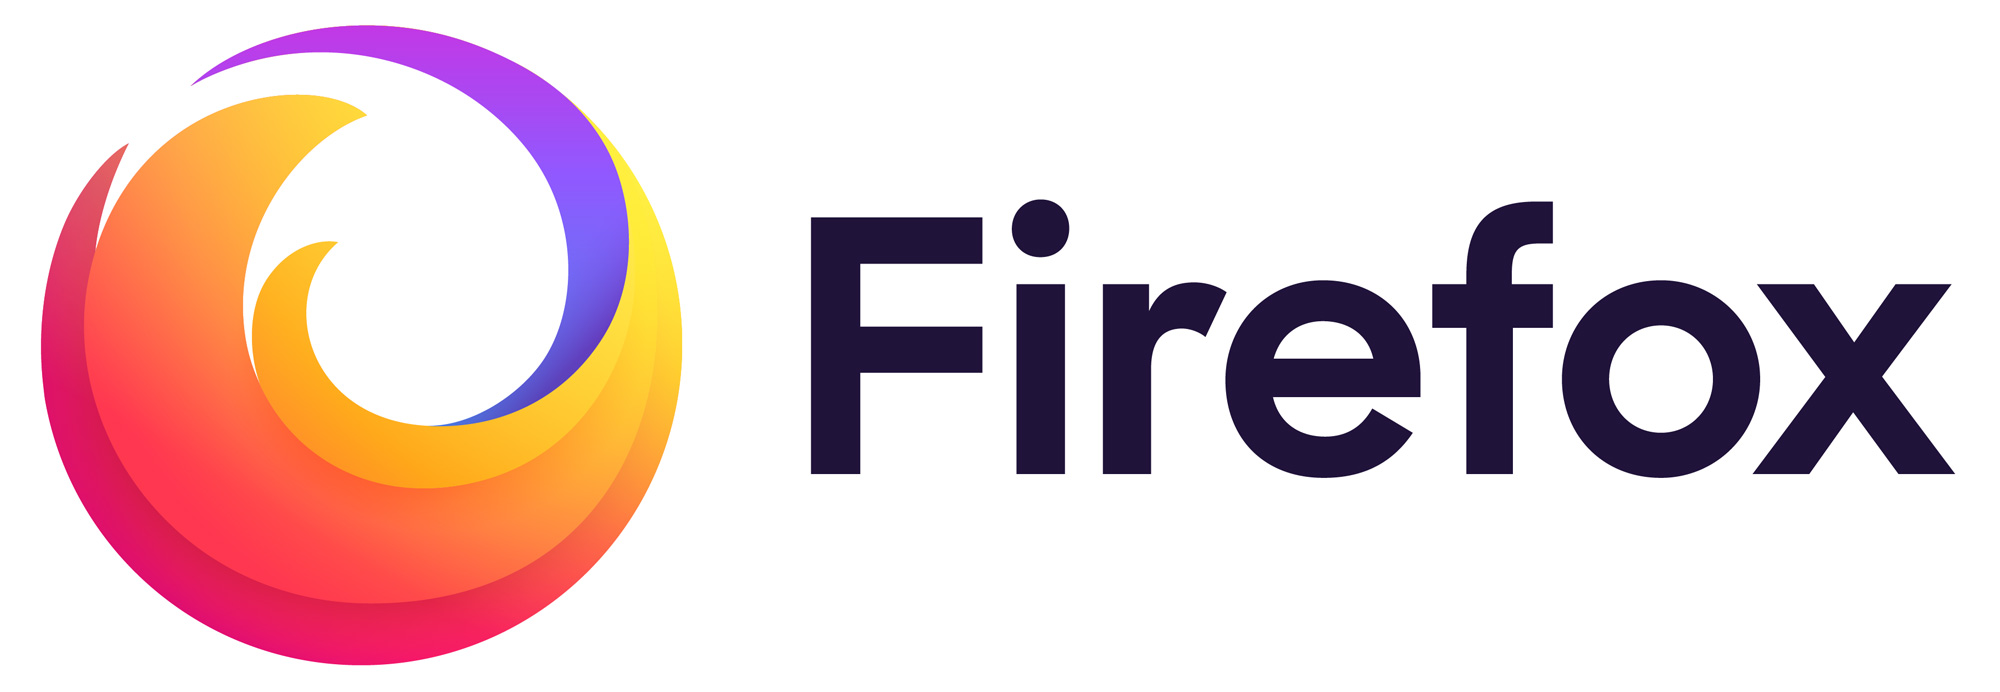 Firefox zaktualizowany do wersji 79.0. Zmiany i nowoci